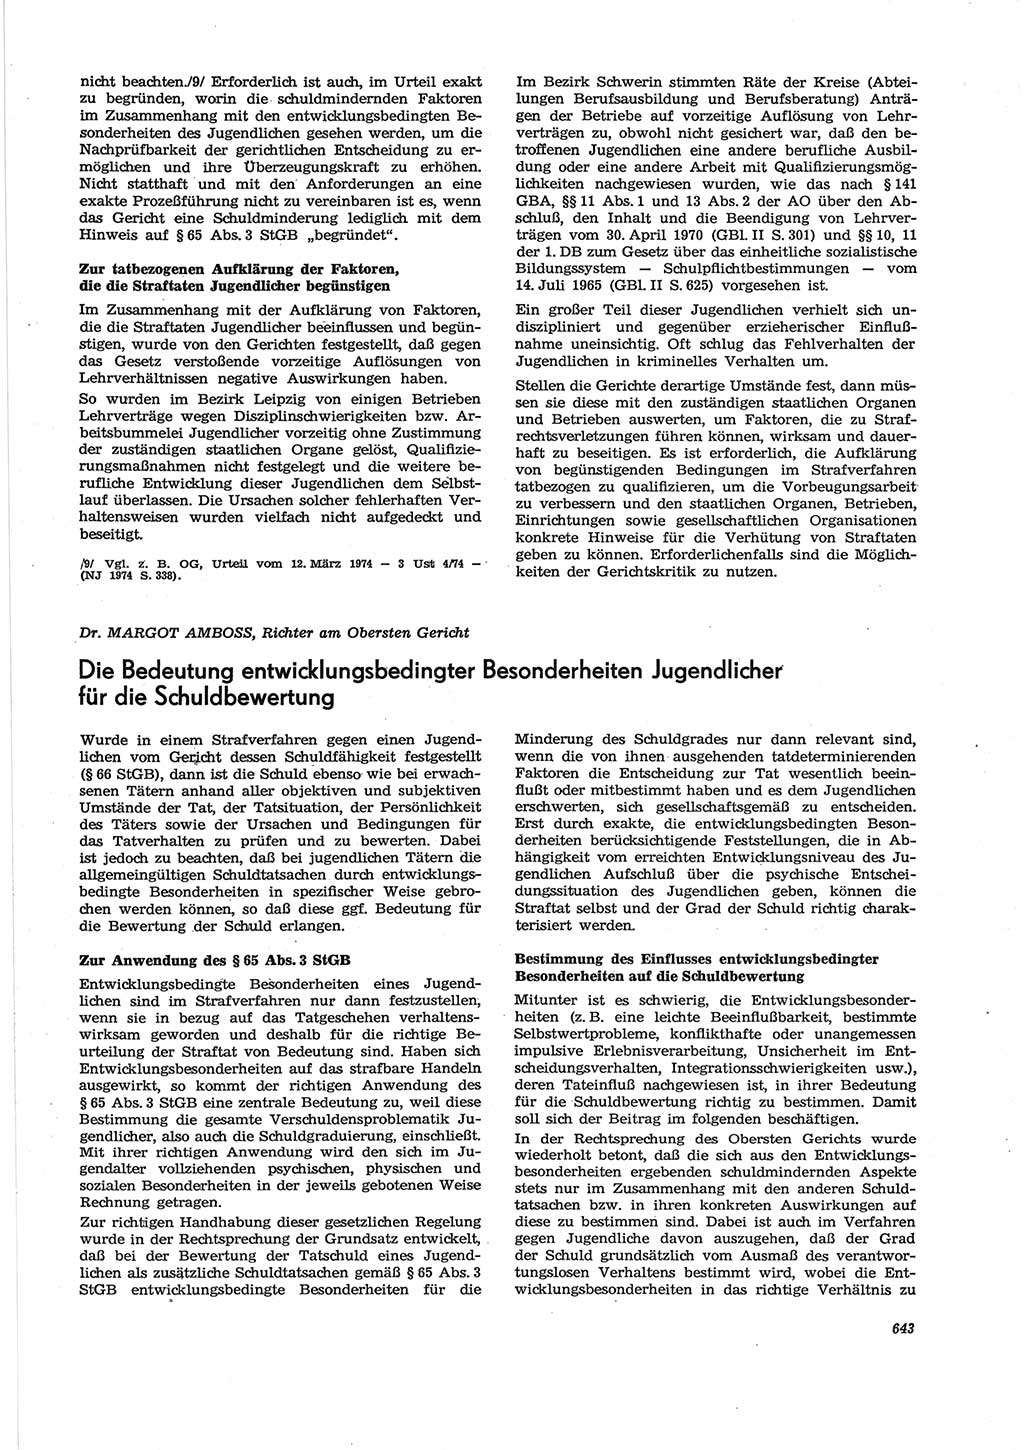 Neue Justiz (NJ), Zeitschrift für Recht und Rechtswissenschaft [Deutsche Demokratische Republik (DDR)], 28. Jahrgang 1974, Seite 643 (NJ DDR 1974, S. 643)